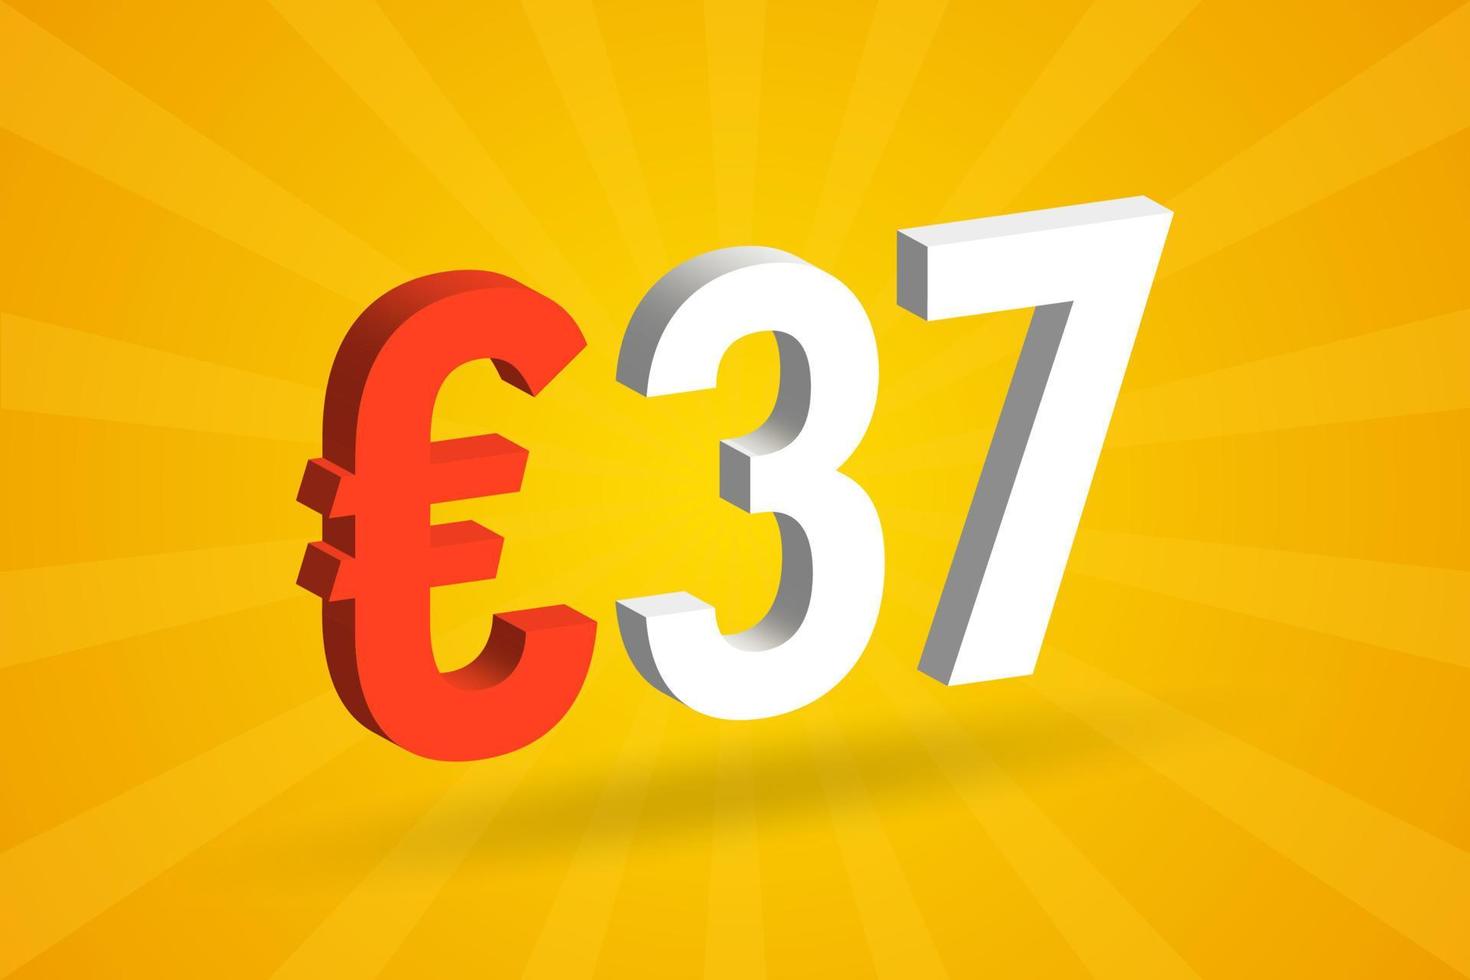 símbolo de texto de vetor 3d de moeda de 37 euros. vetor de estoque de dinheiro da união europeia 3d 37 euros